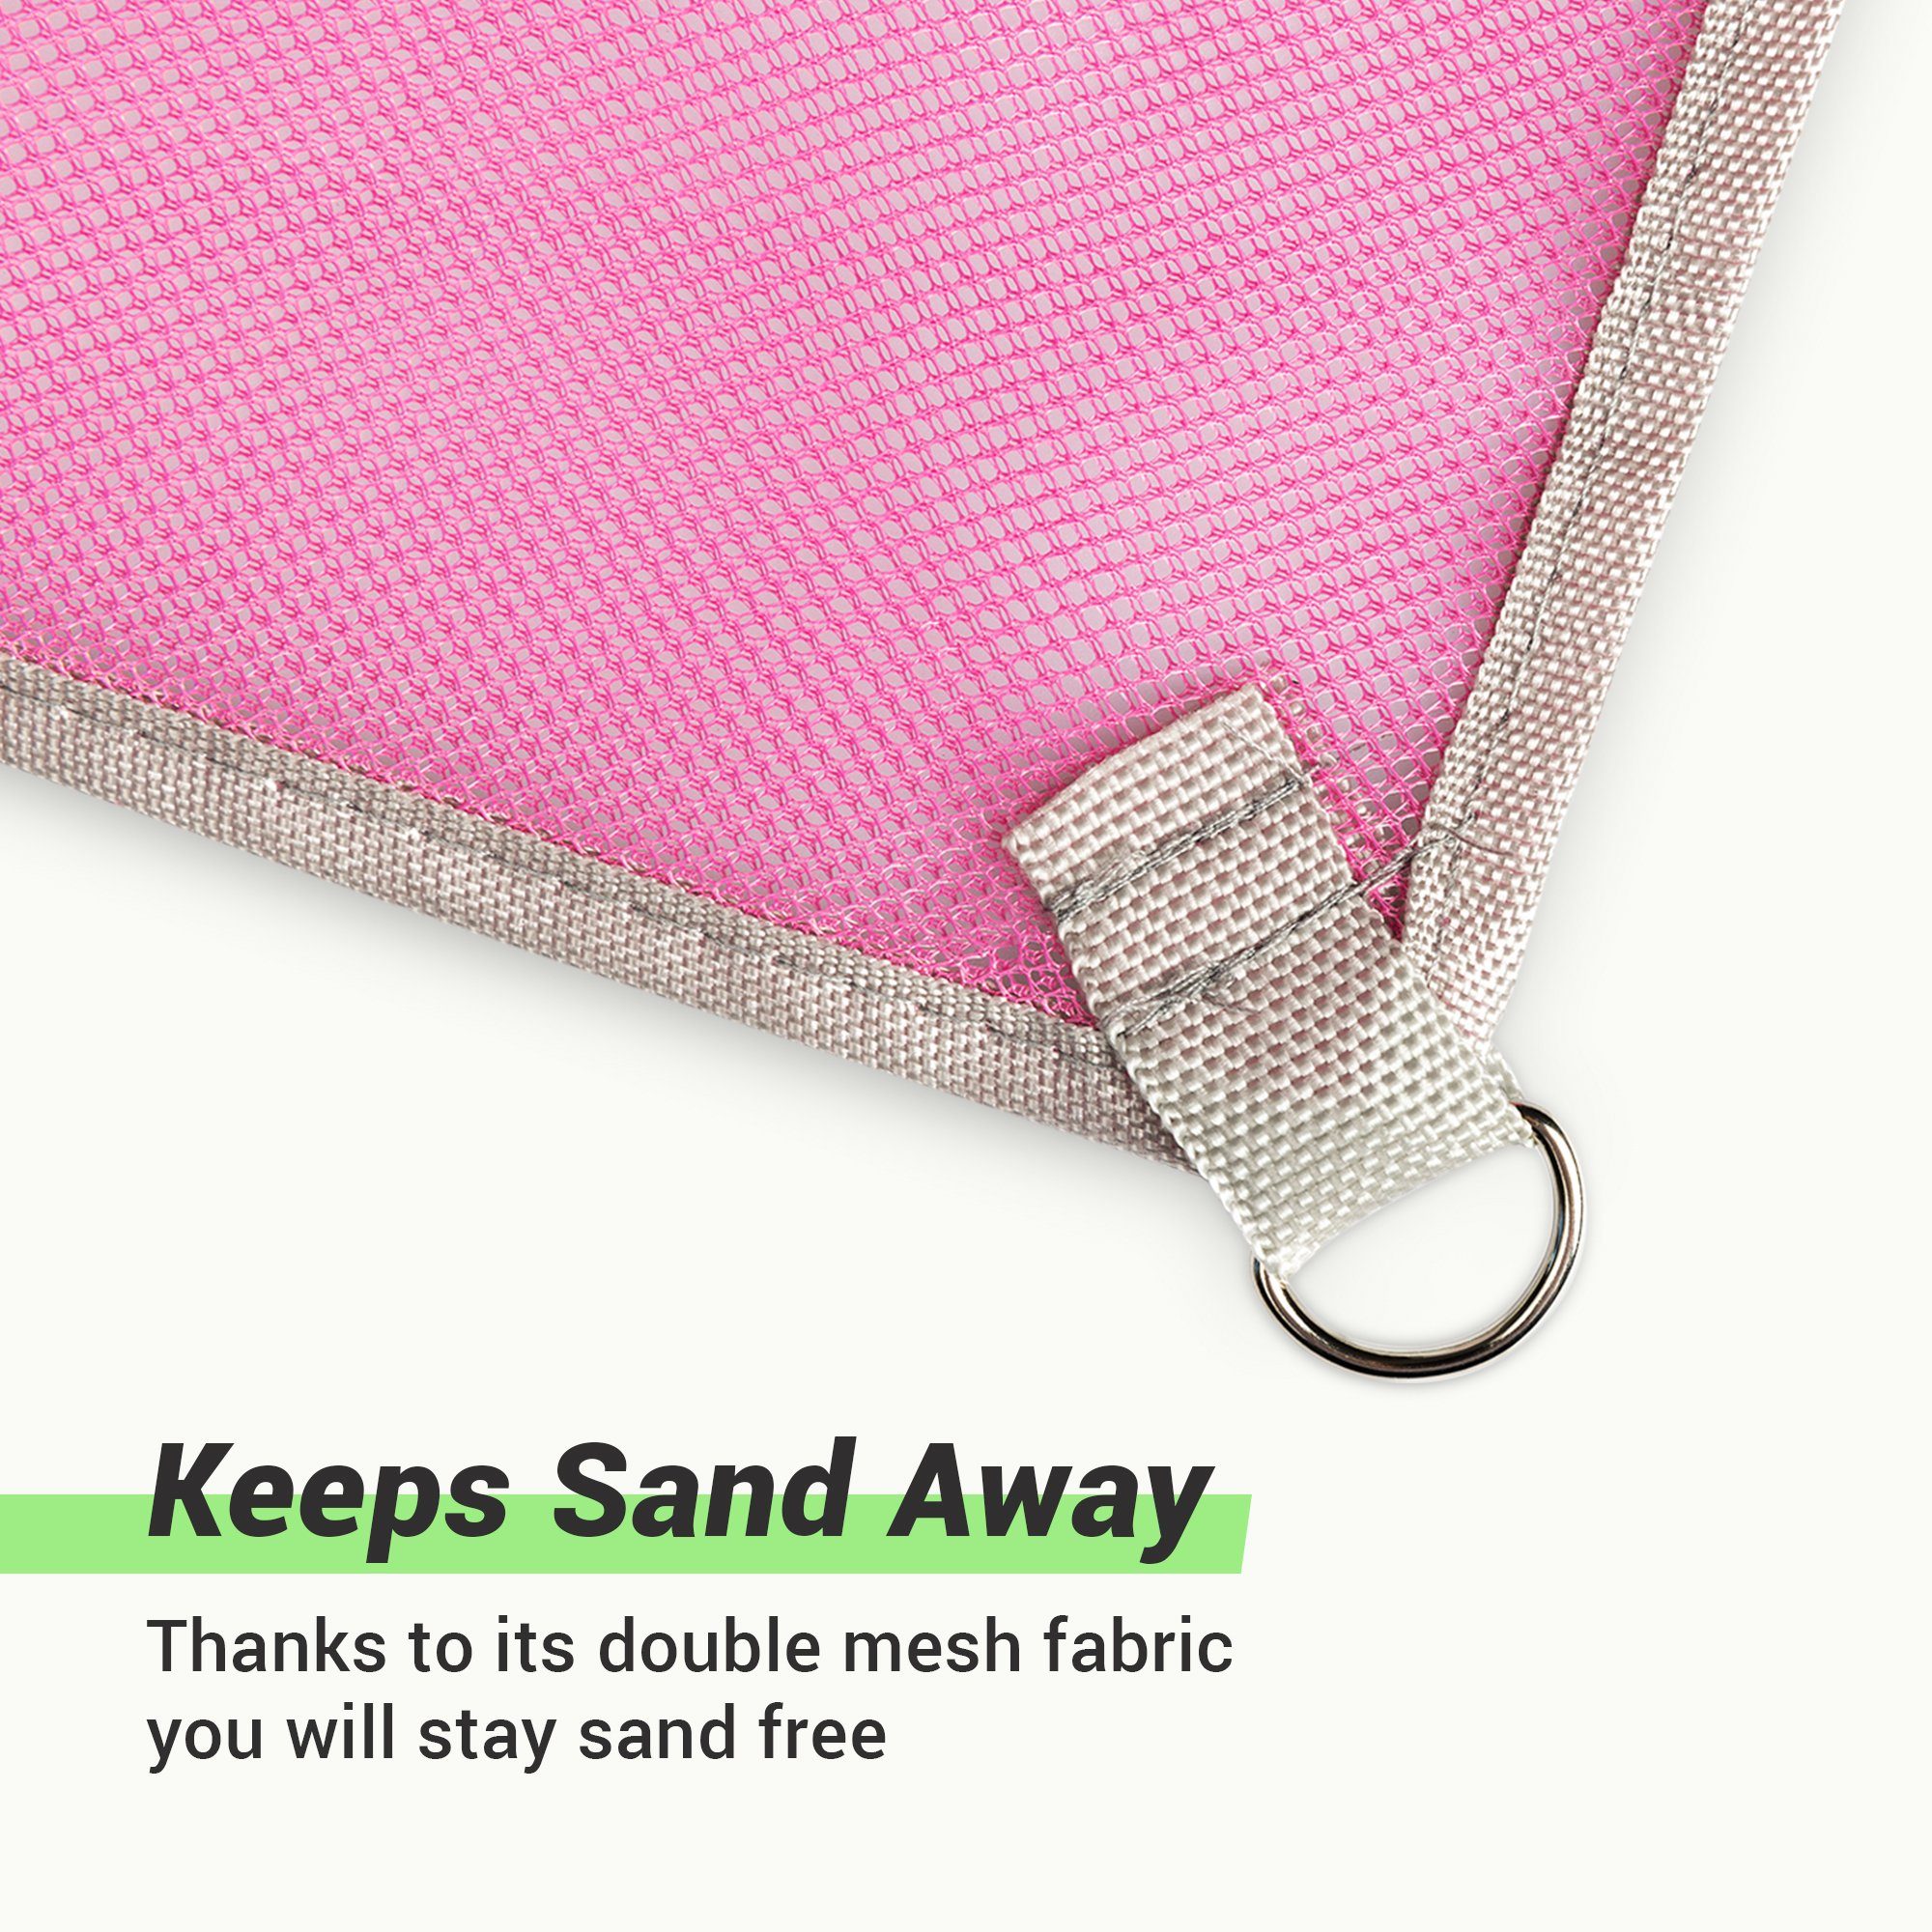 JEMIDI Strandtuch Anti-Sand-Matte 200x150cm Stranddecke Strandunterlage  sandfrei kompakt, Sandfreie Strandmatte mit Netztechnologie - 200x150cm Pink